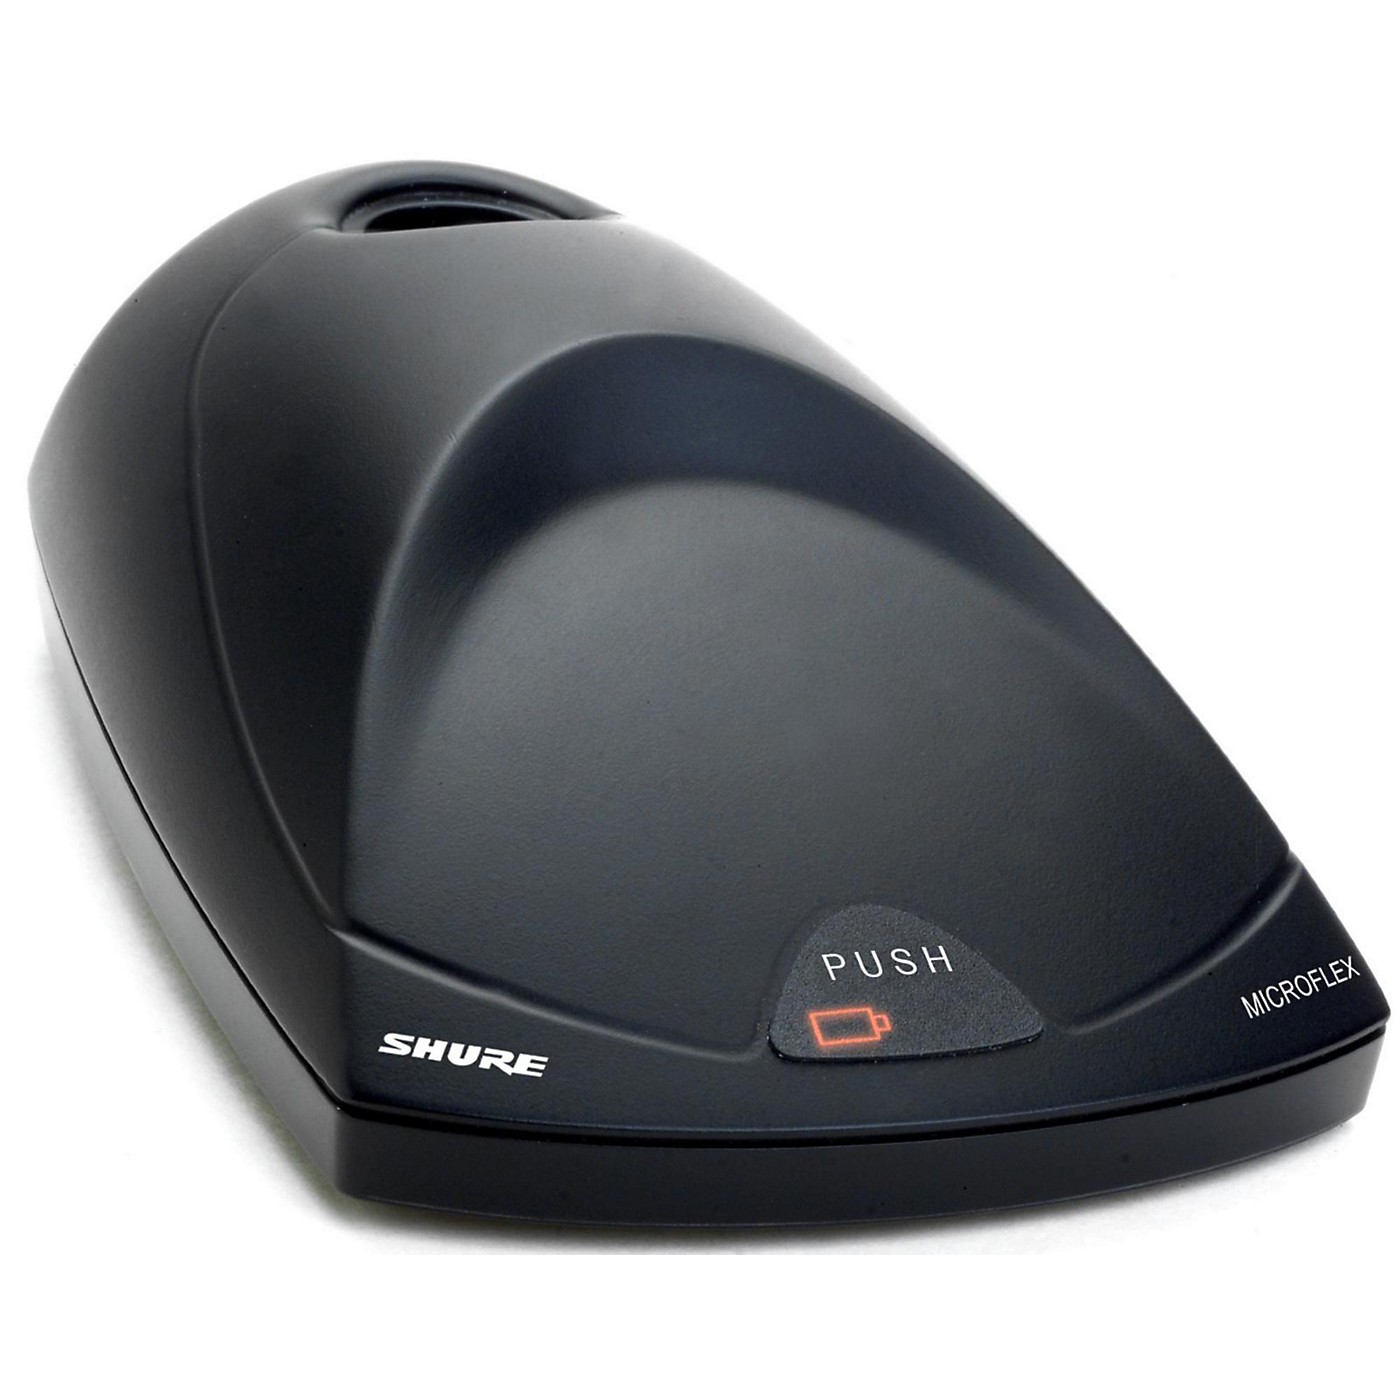 Shure MX890 Microflex Wireless Desktop Base thumbnail